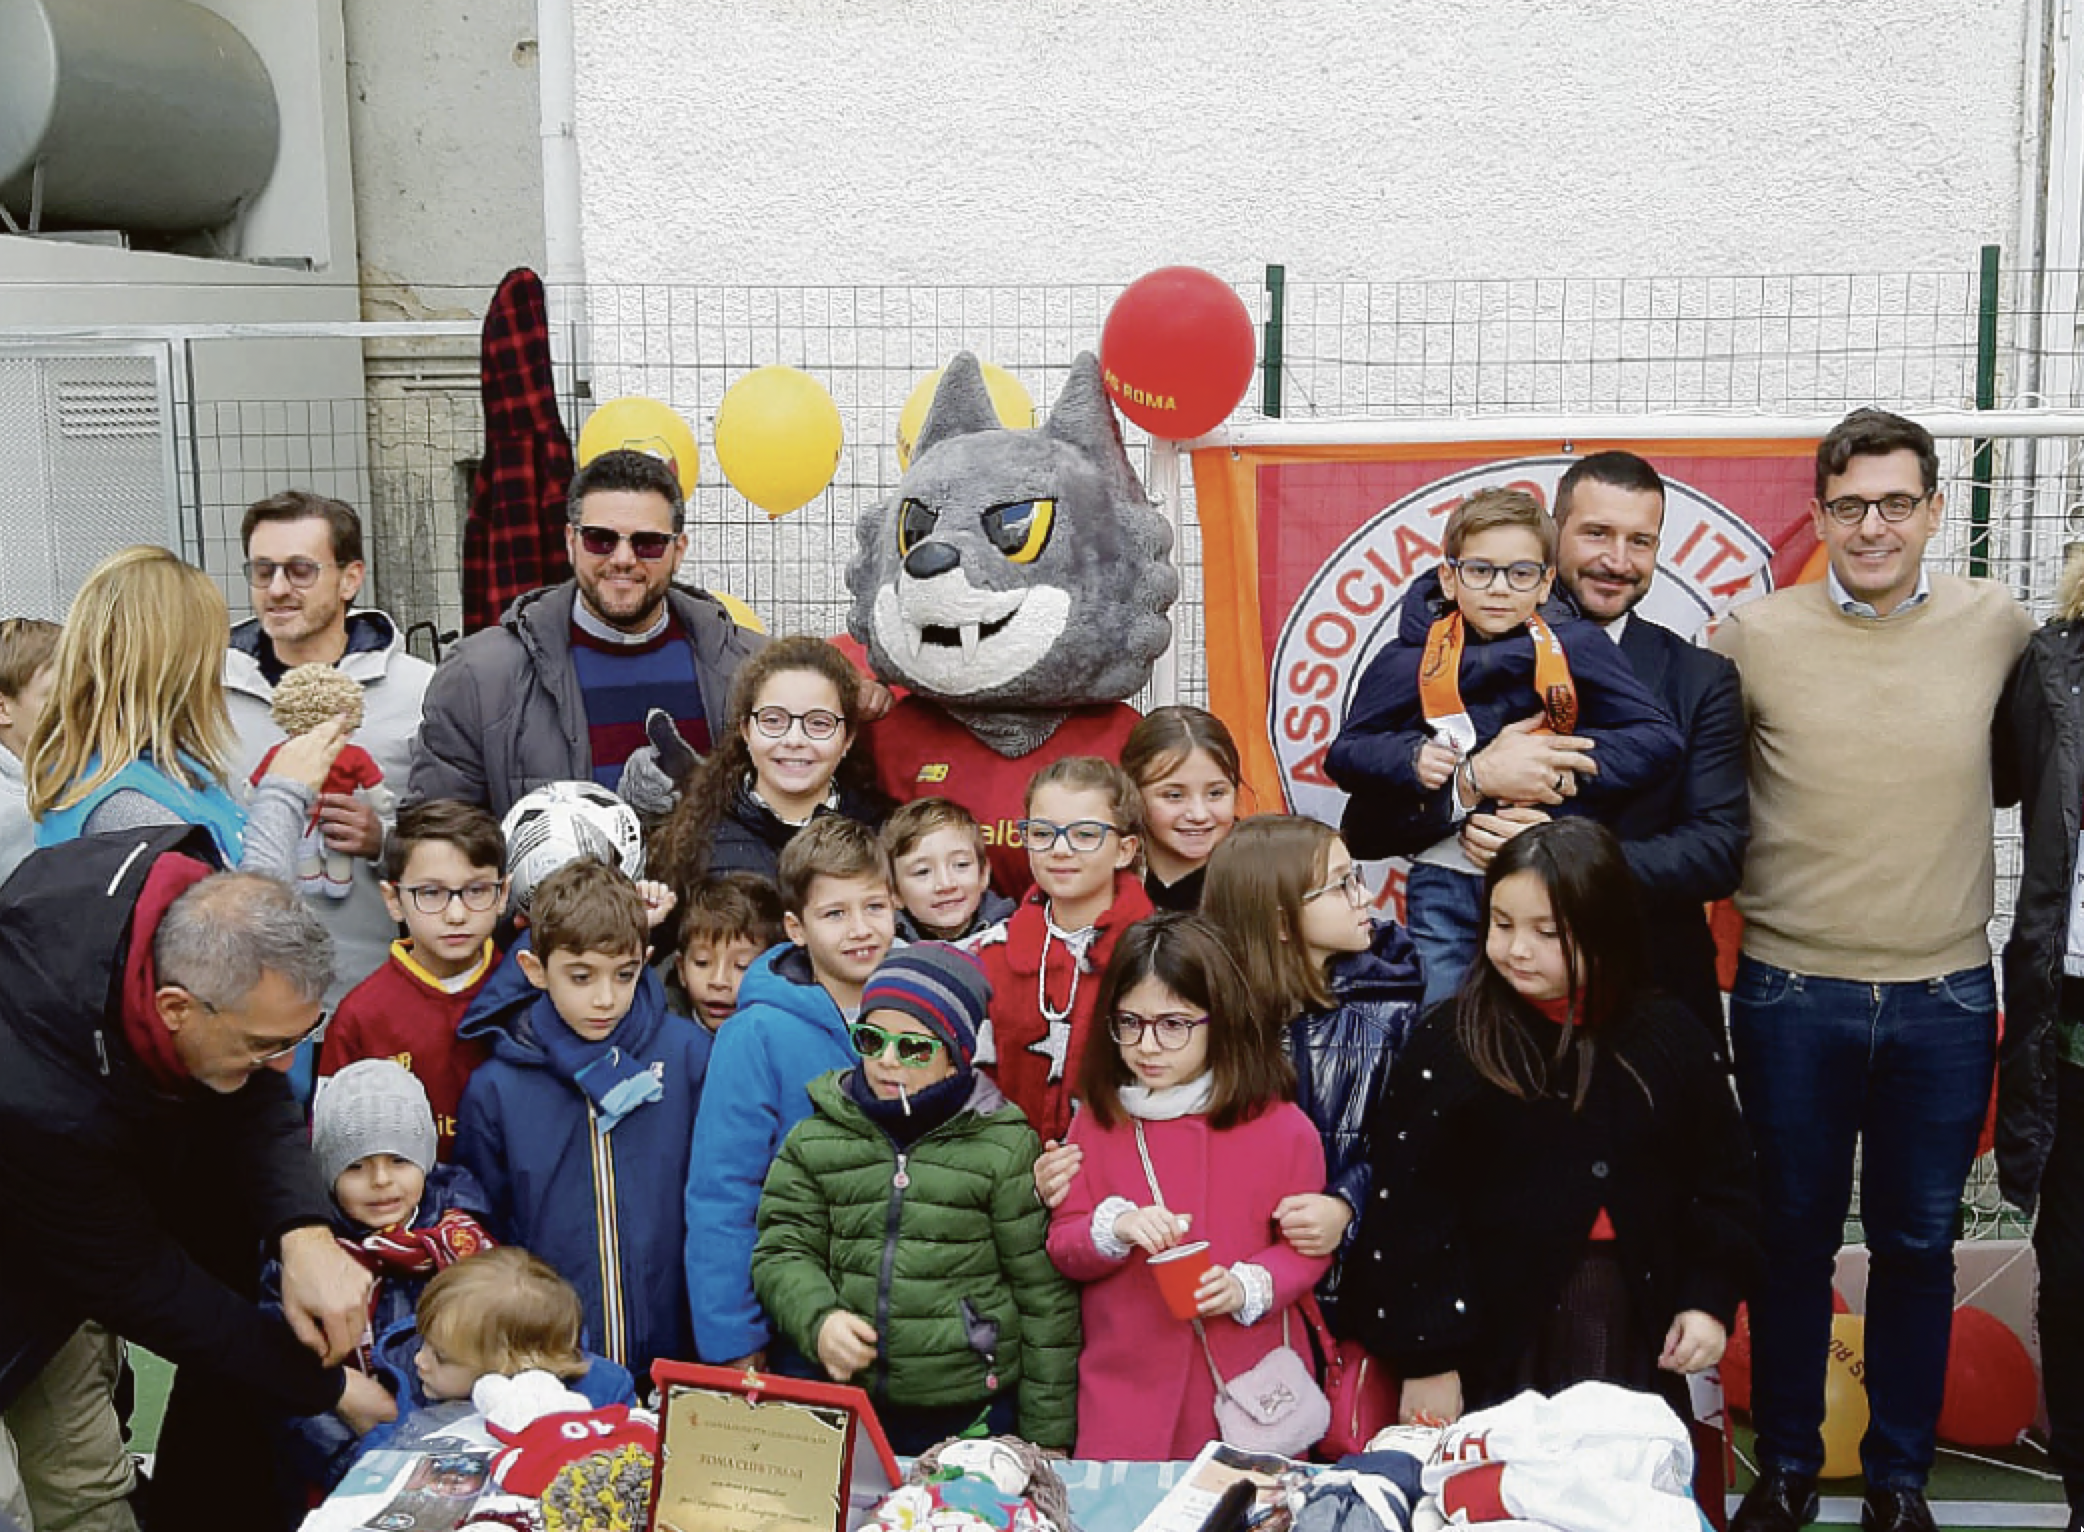 I componenti del Roma Club Trani nel campetto con tutti i bambini che hanno partecipato all’inaugurazione insieme al dirigente della Roma Francesco Pastorella, i rappresentanti dell’Airc e la mascotte Romolo 